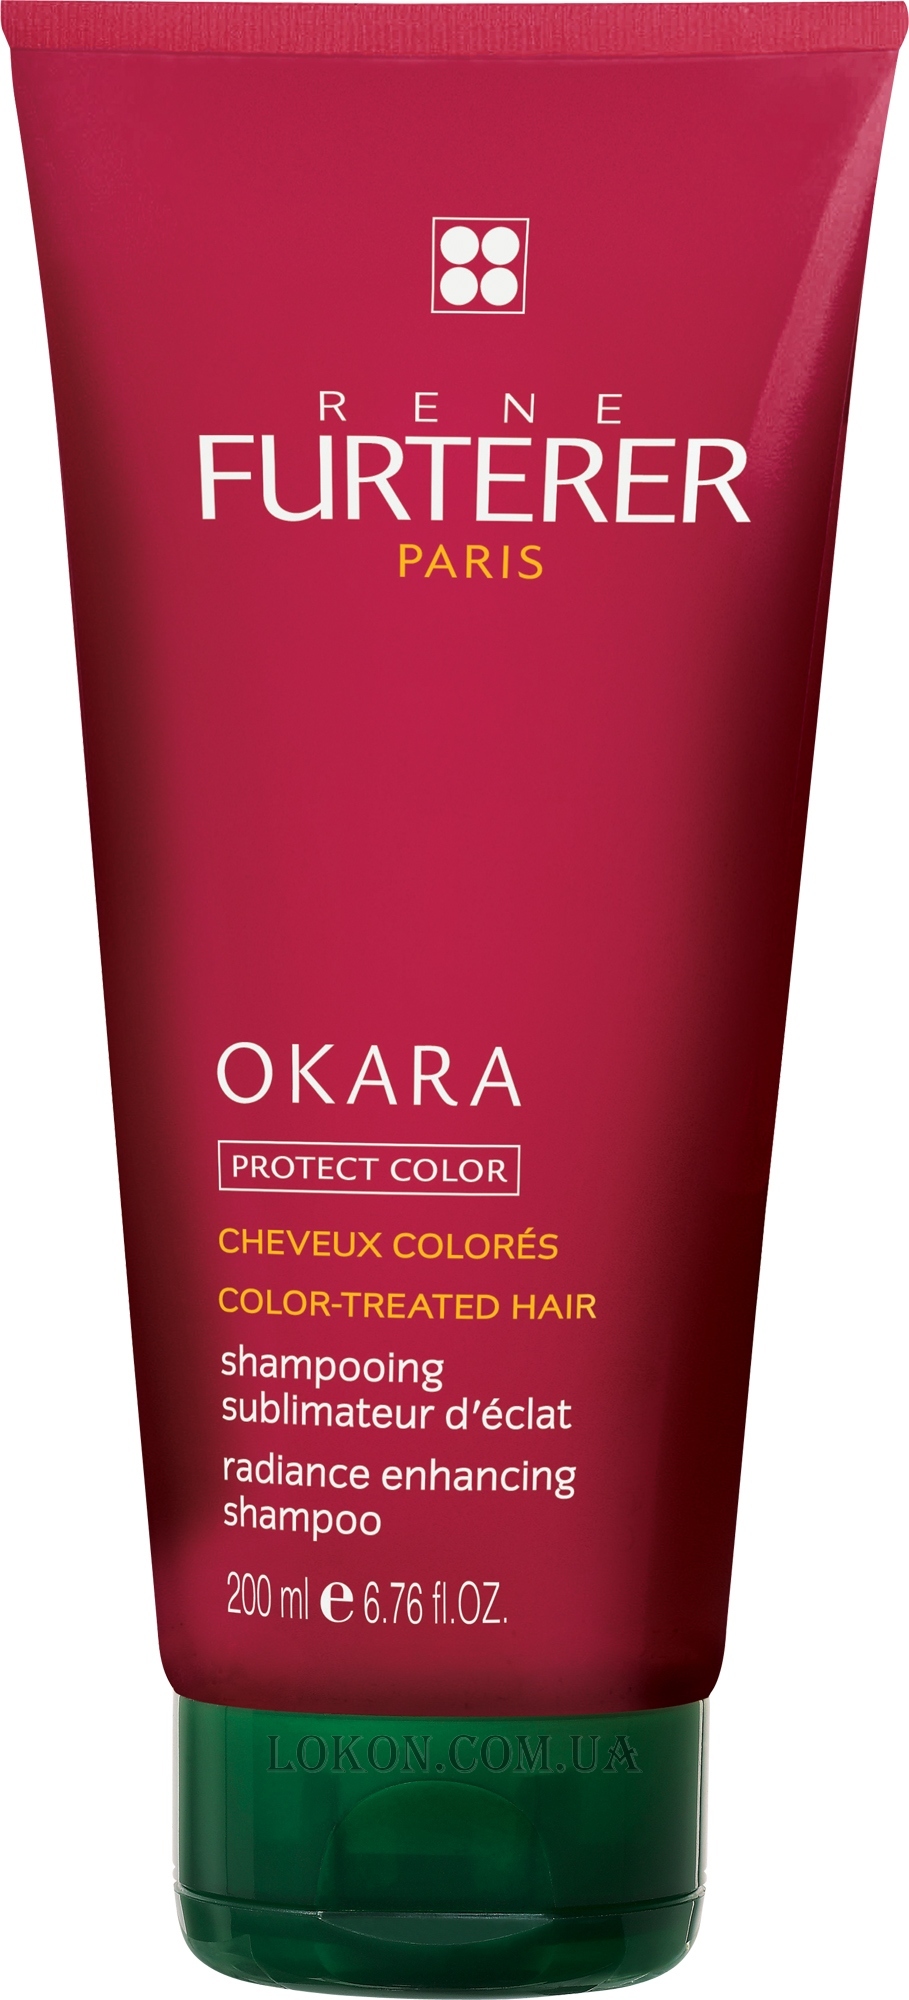 RENE FURTERER Okara Radiance Enchancing Shampoo - Защитный шампунь для сияния окрашенных волос